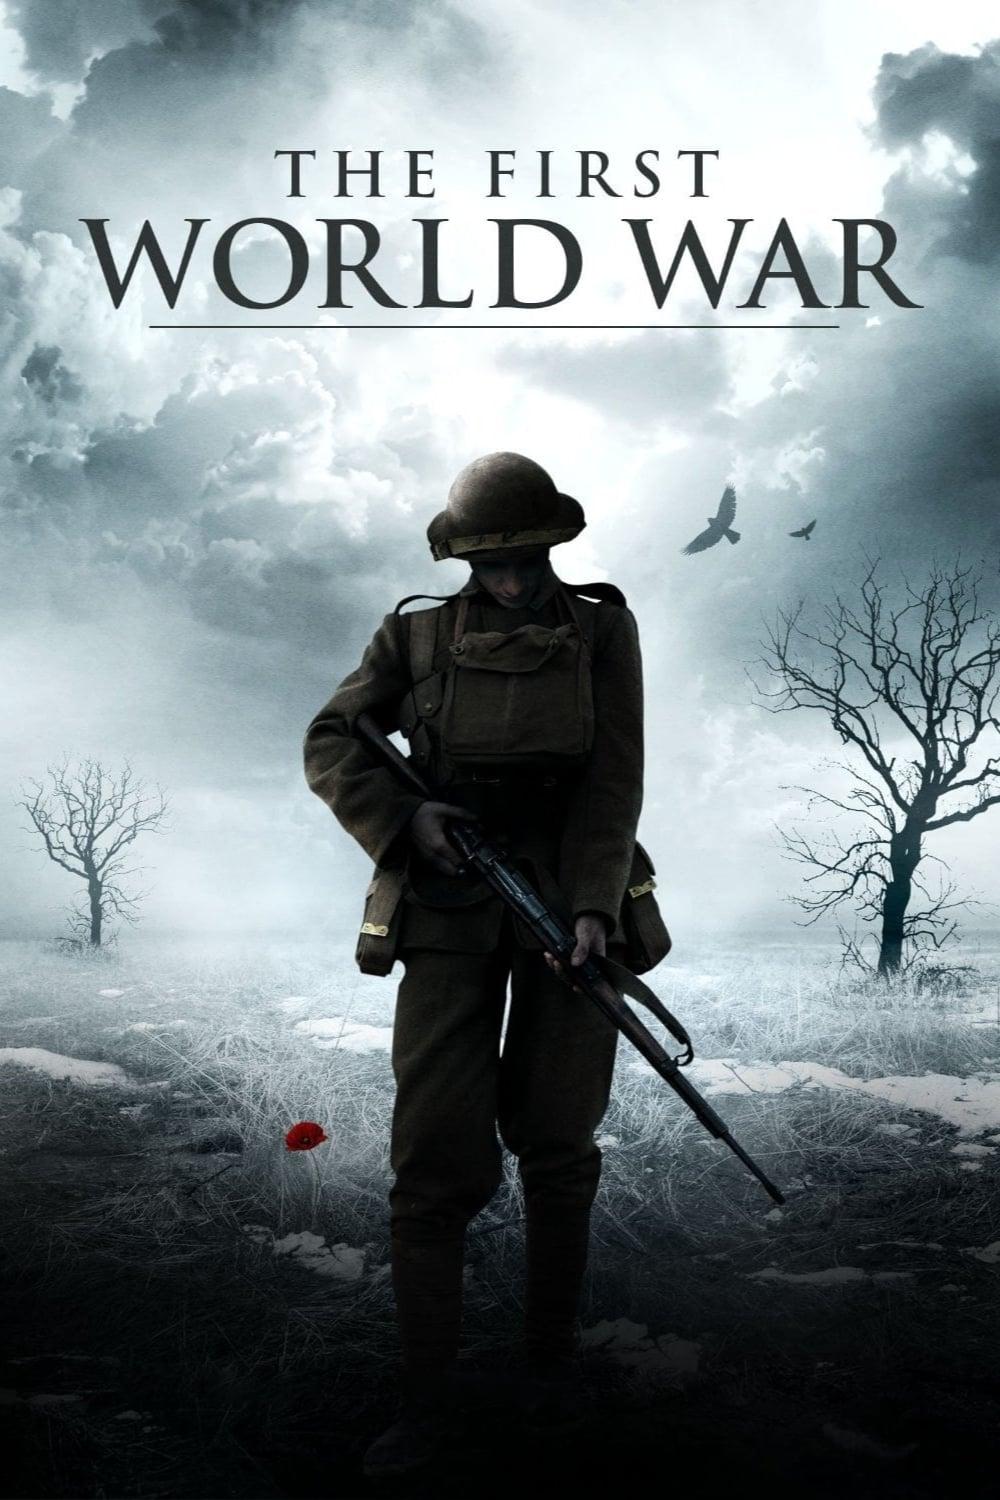 The First World War poster